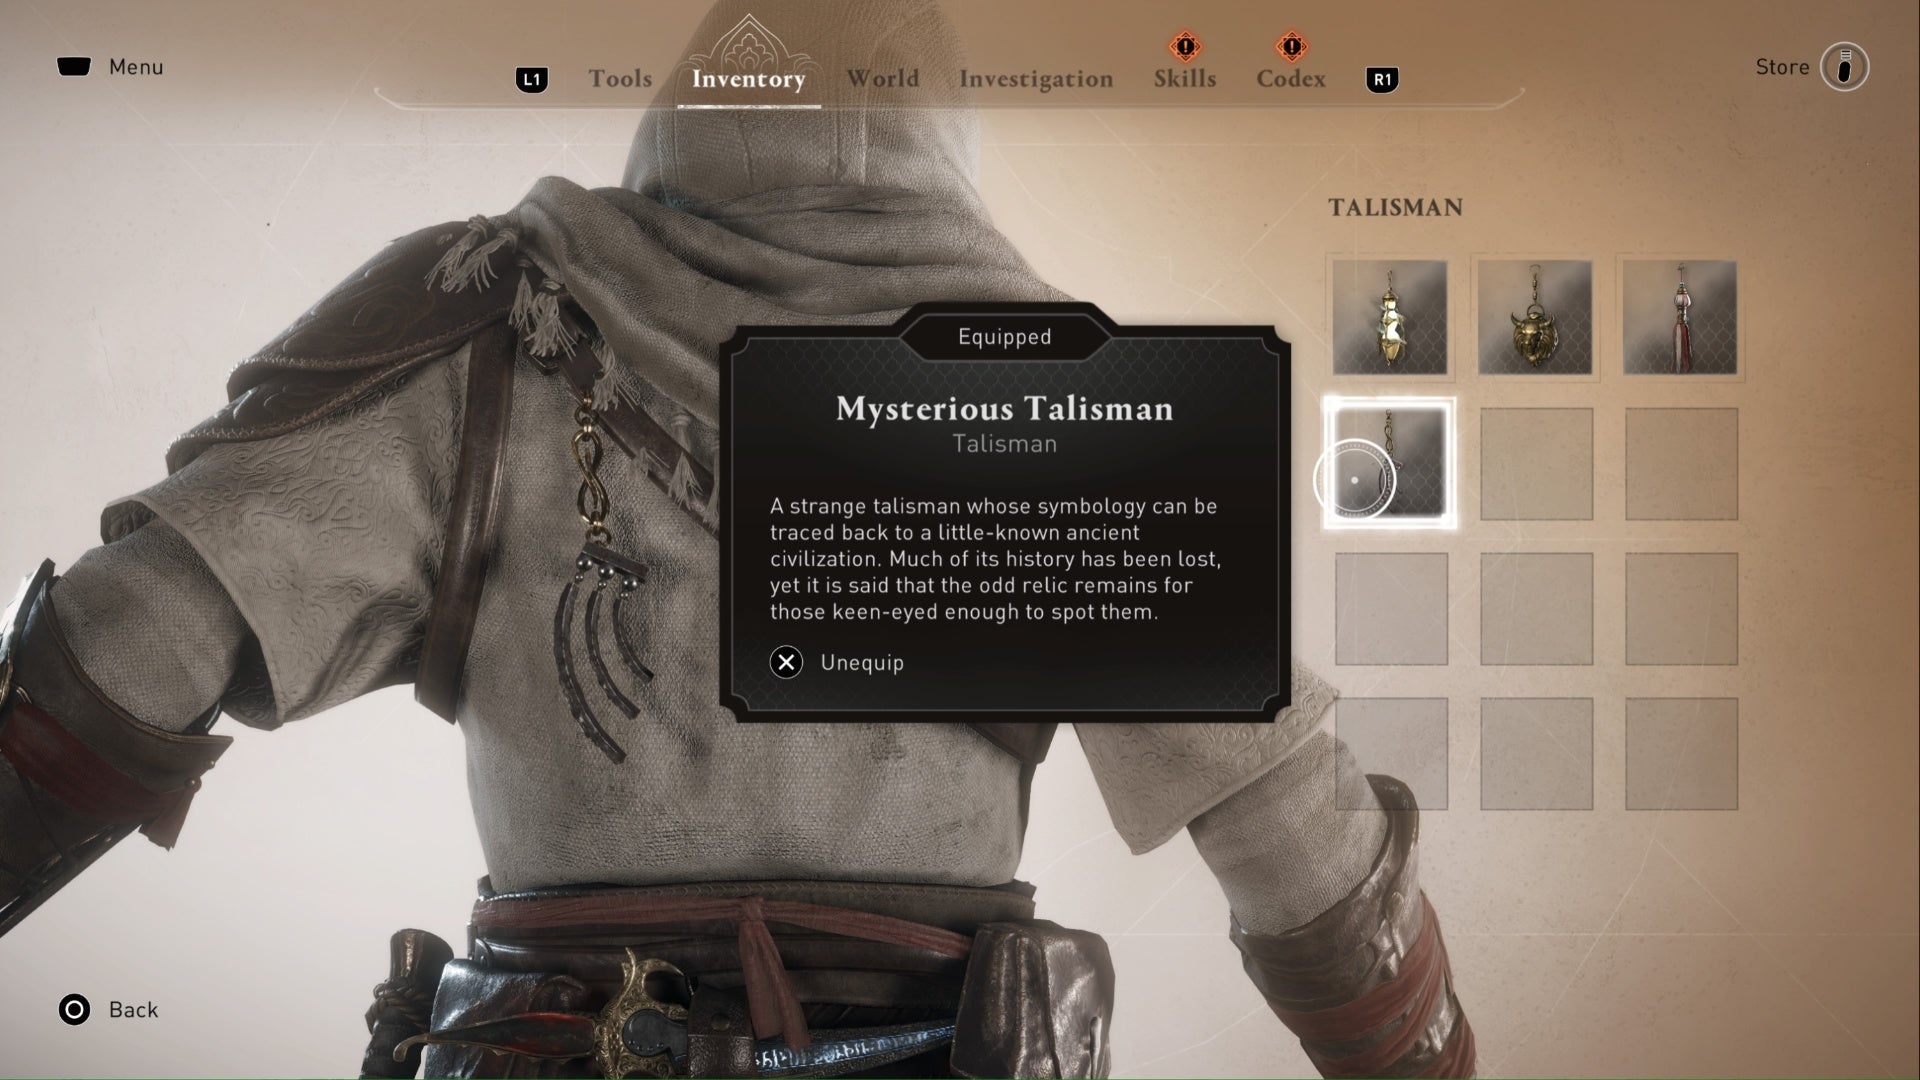 Assassins Creed Mirage, la imagen es del menú de inventario de talismán que muestra detalles del misterioso talismán.